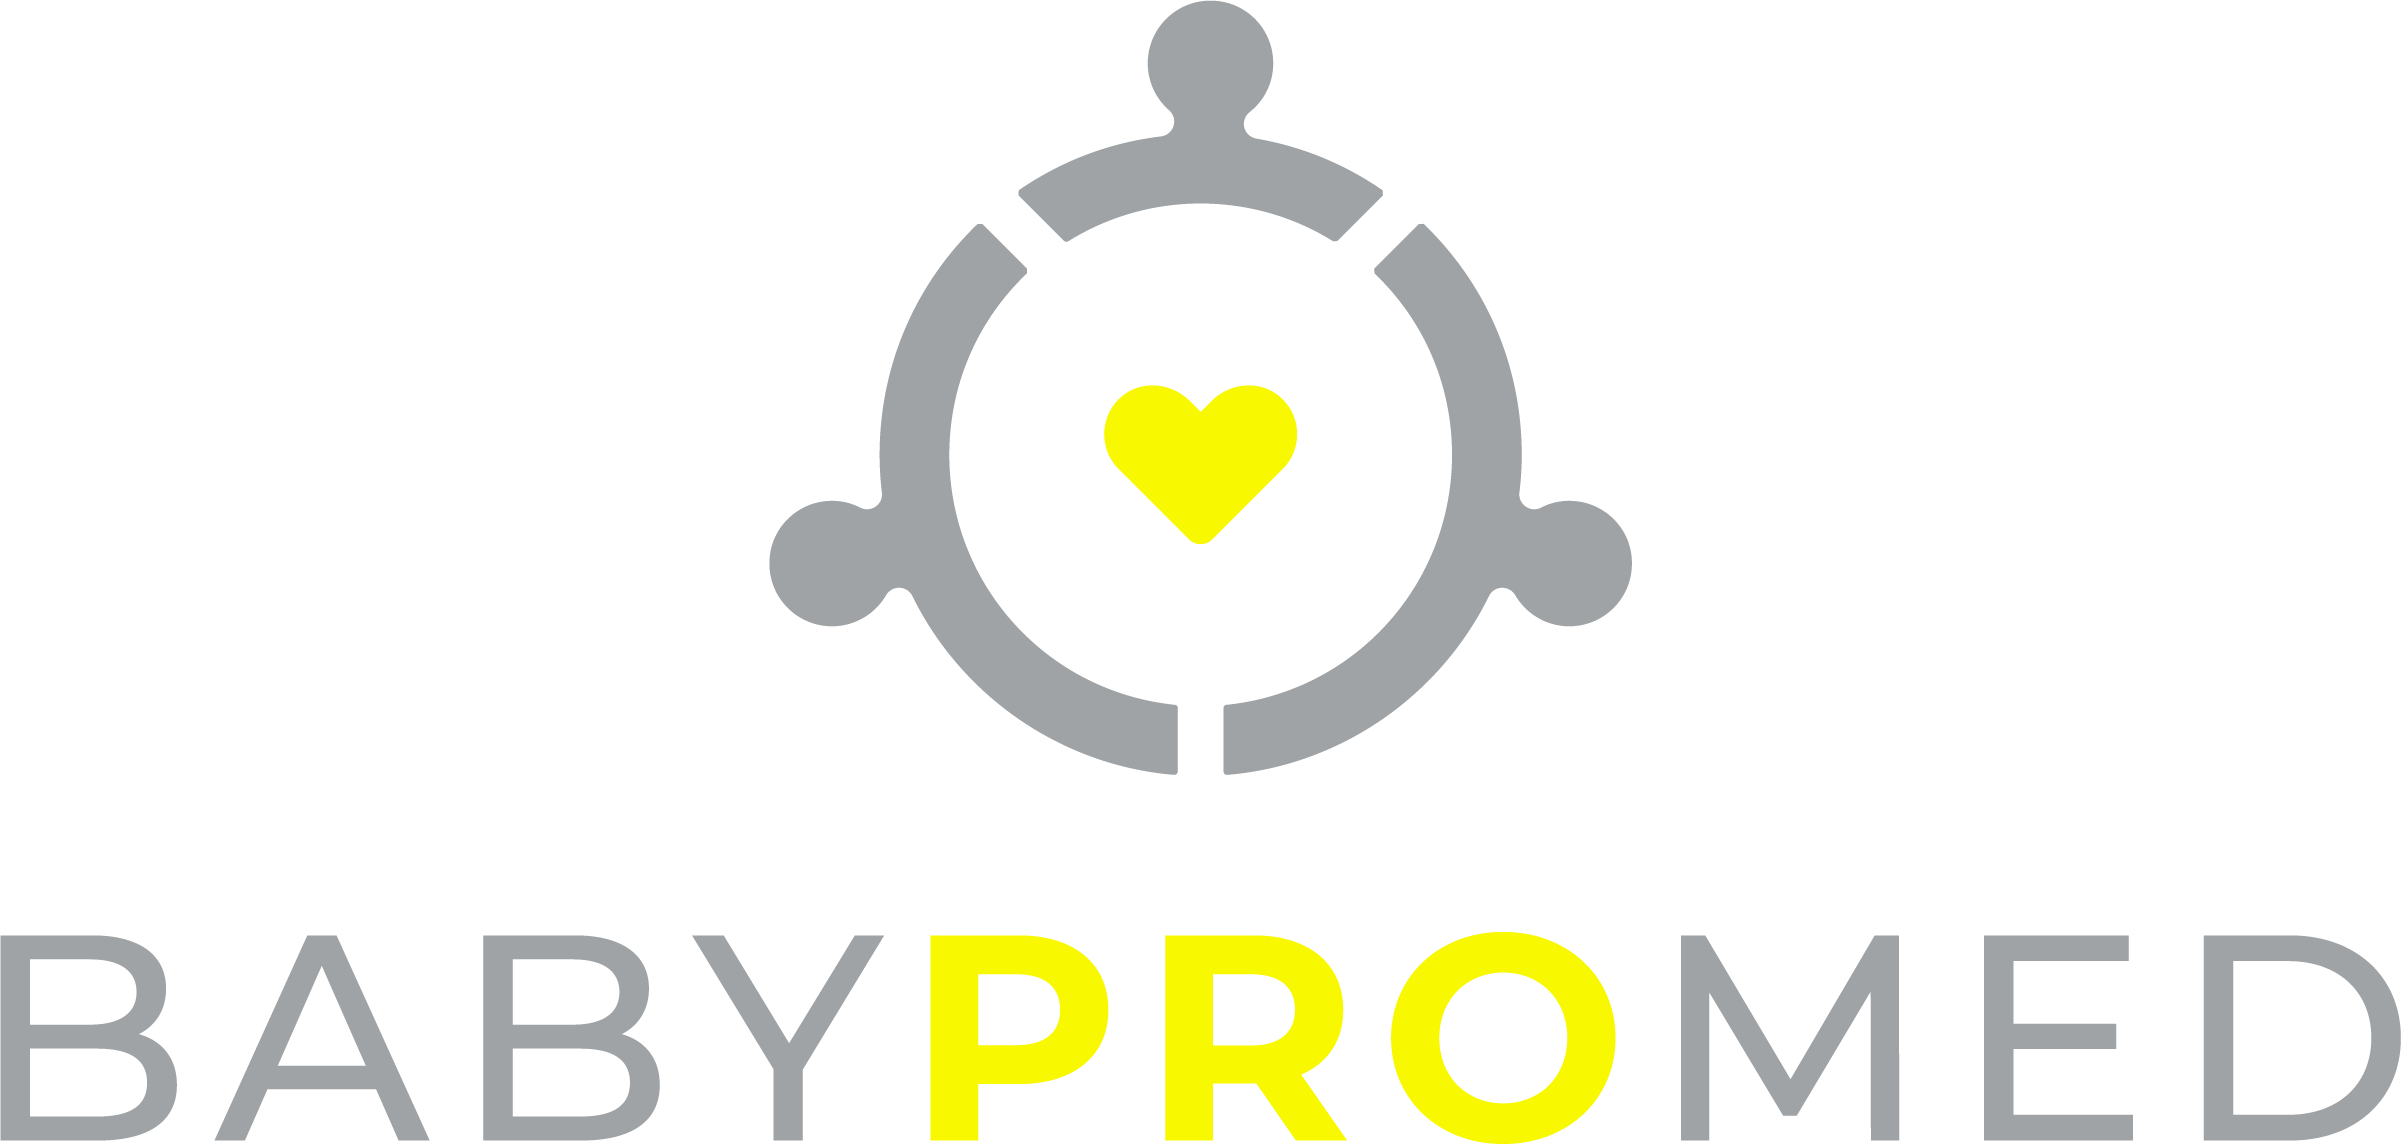 BabyProMed logo normal transparent